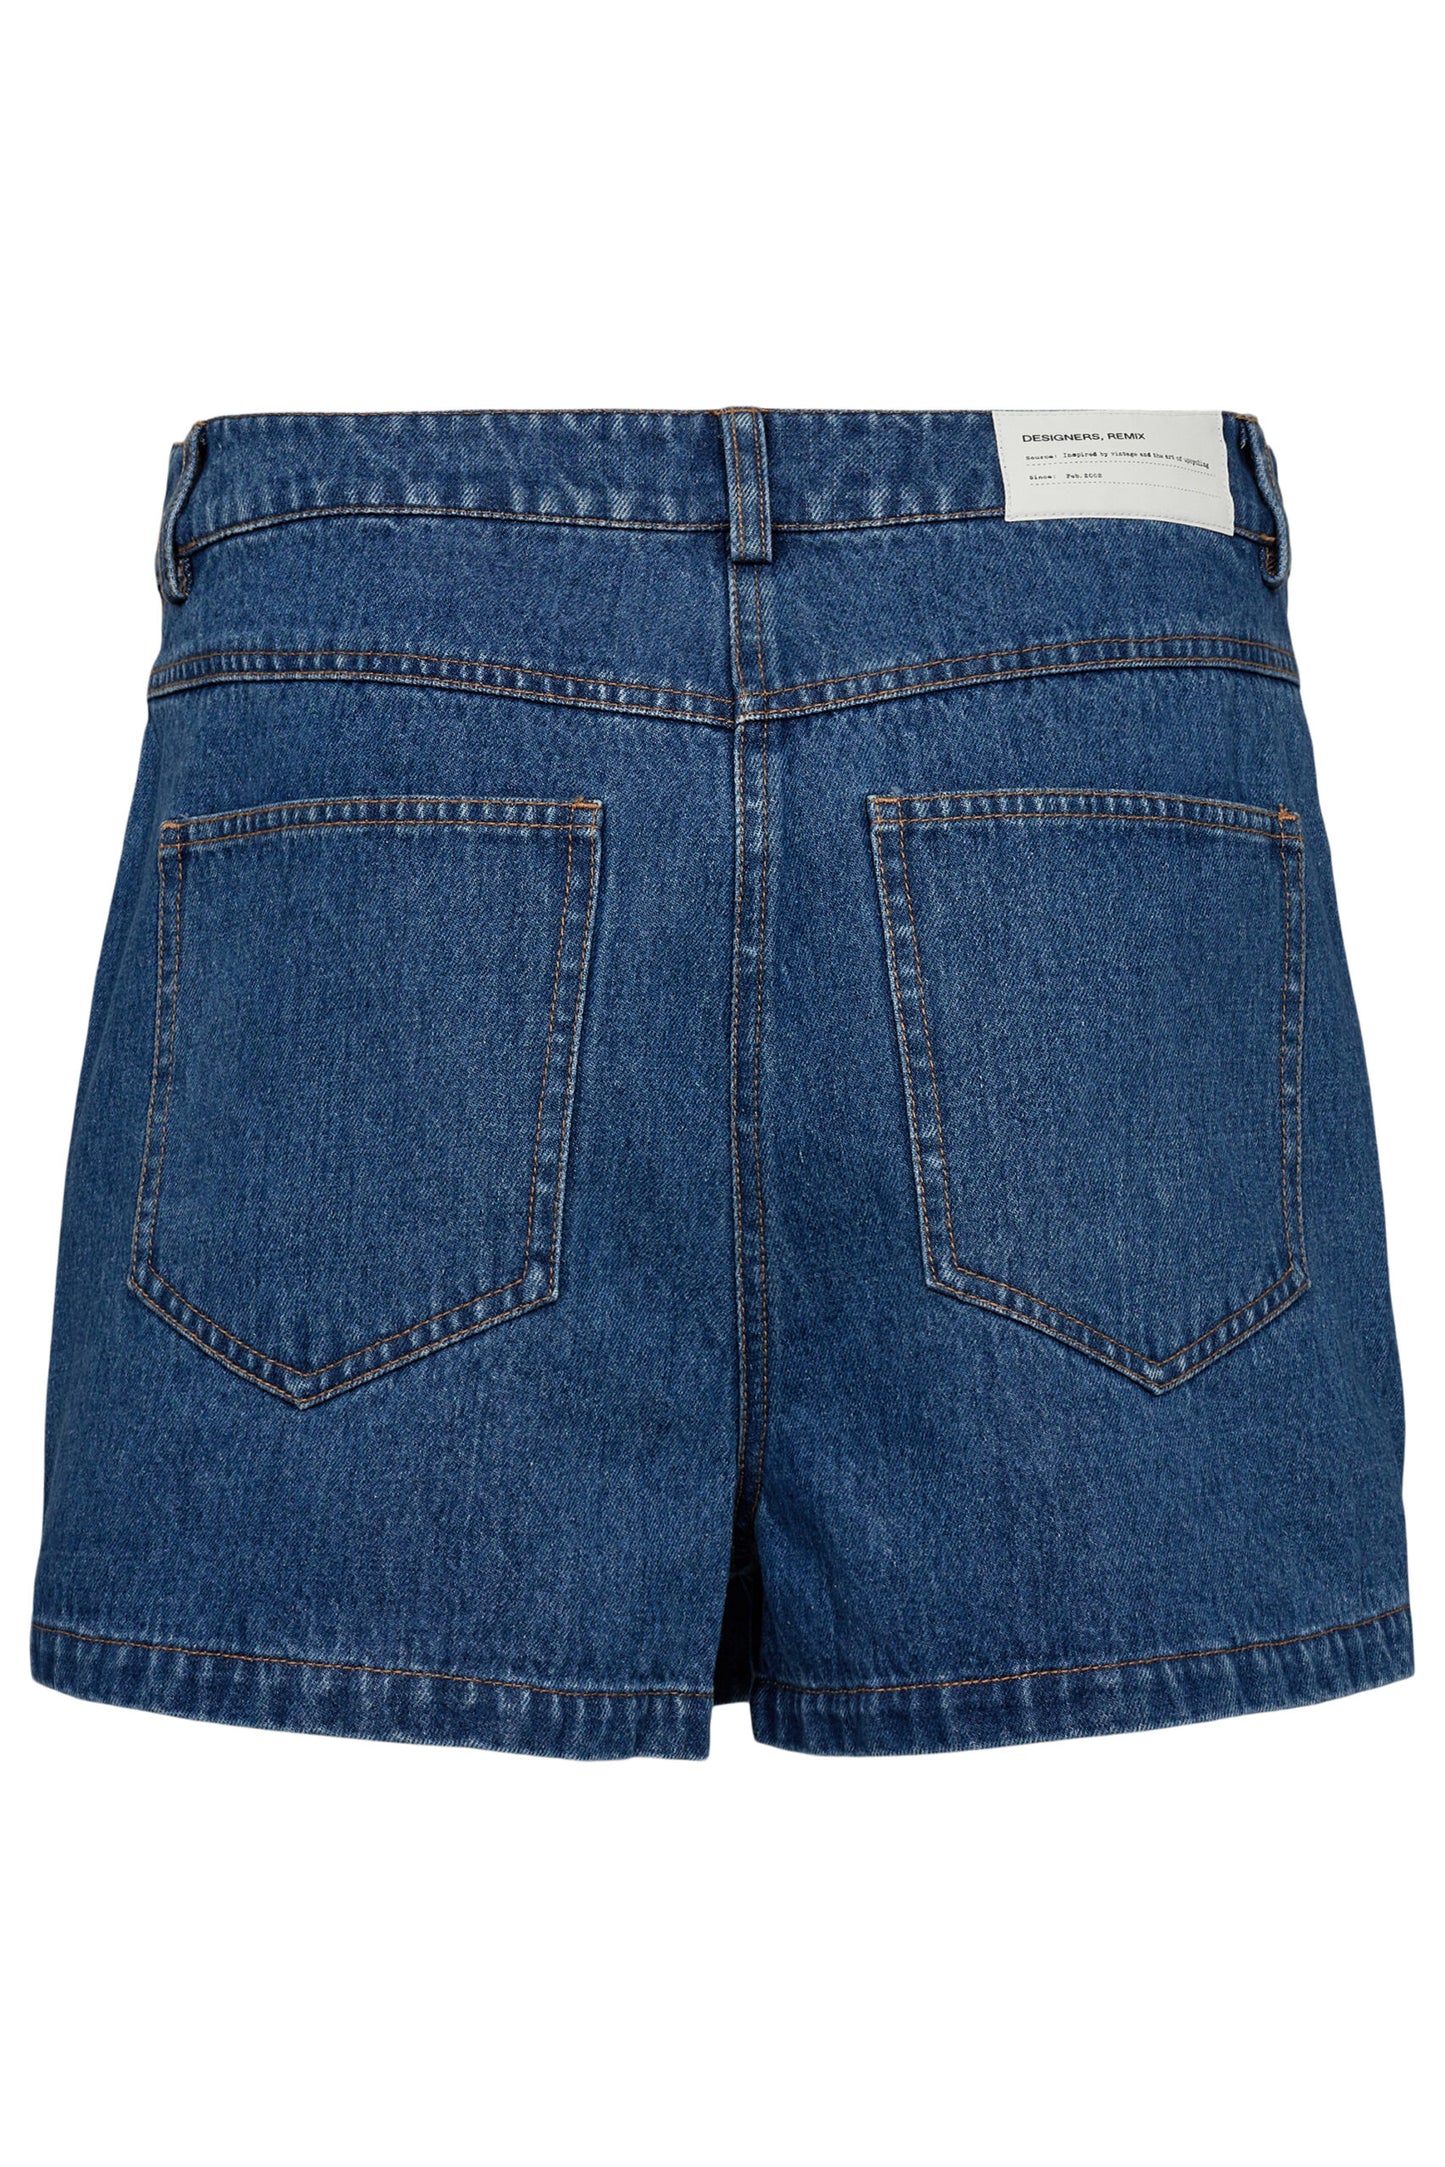 Miles Skirt Shorts